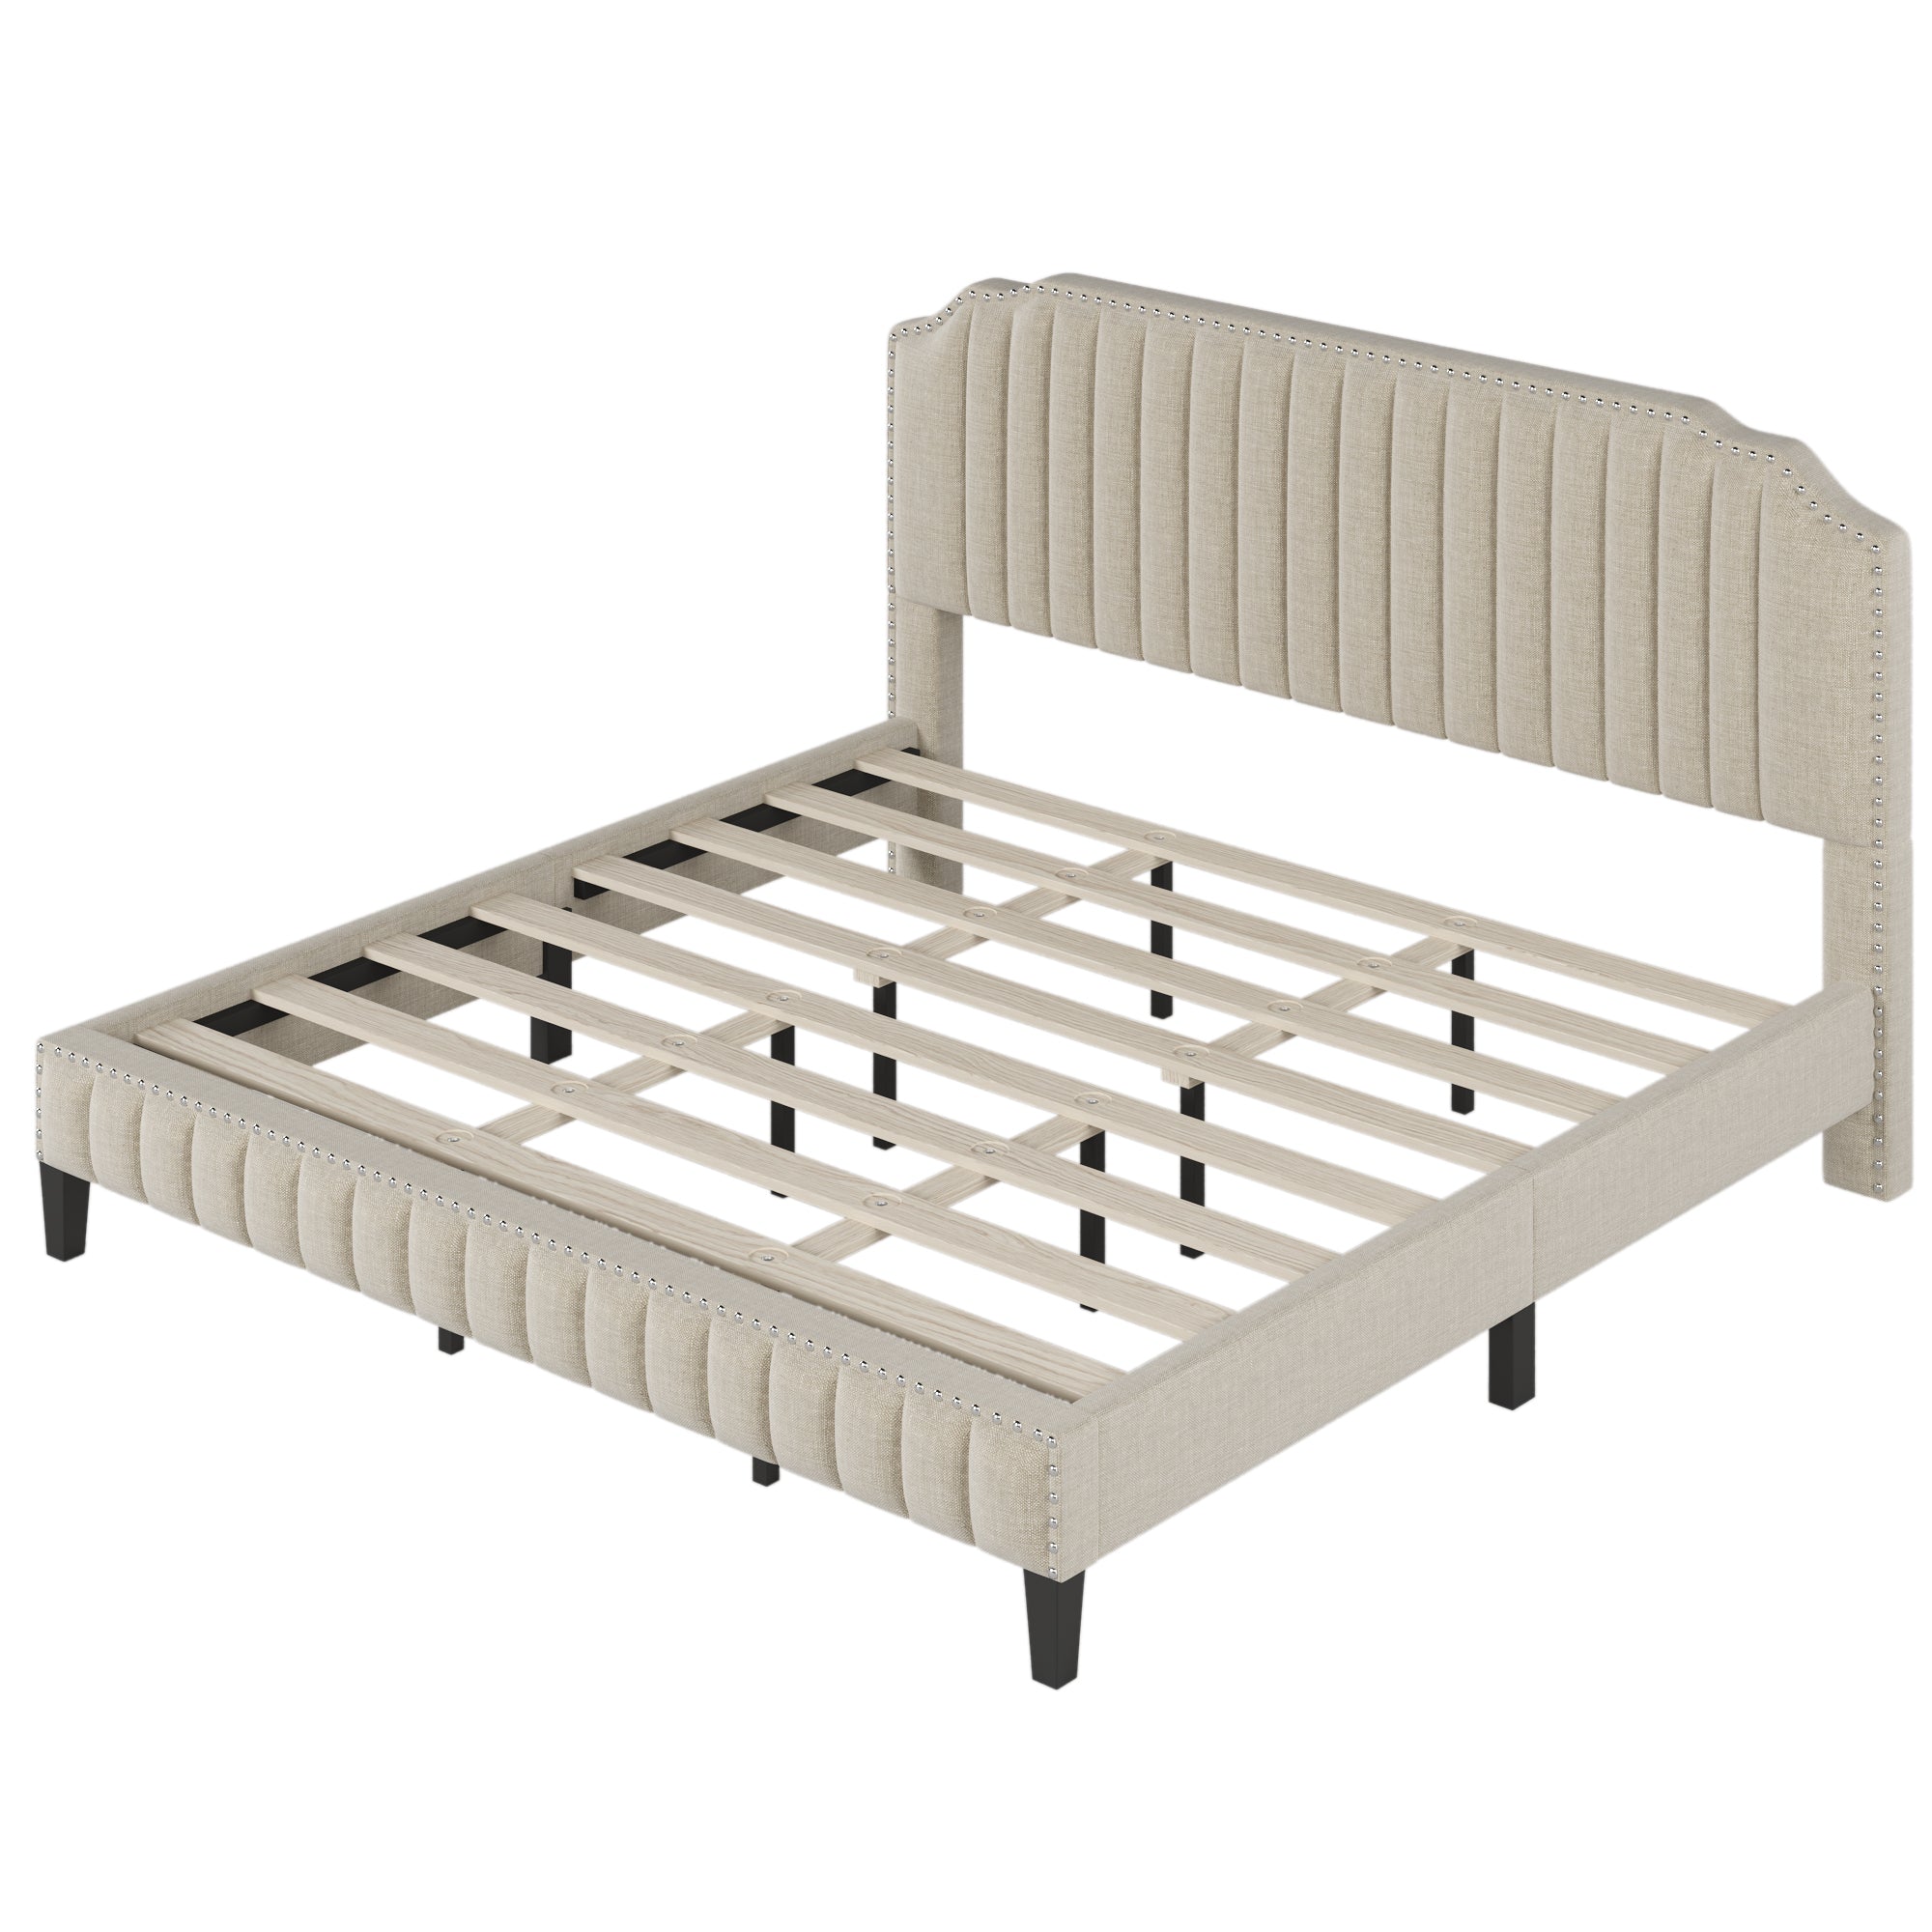 King Modern Linen Curved Solid Wood Platform Bed Frame | Cream By: Alabama Beds